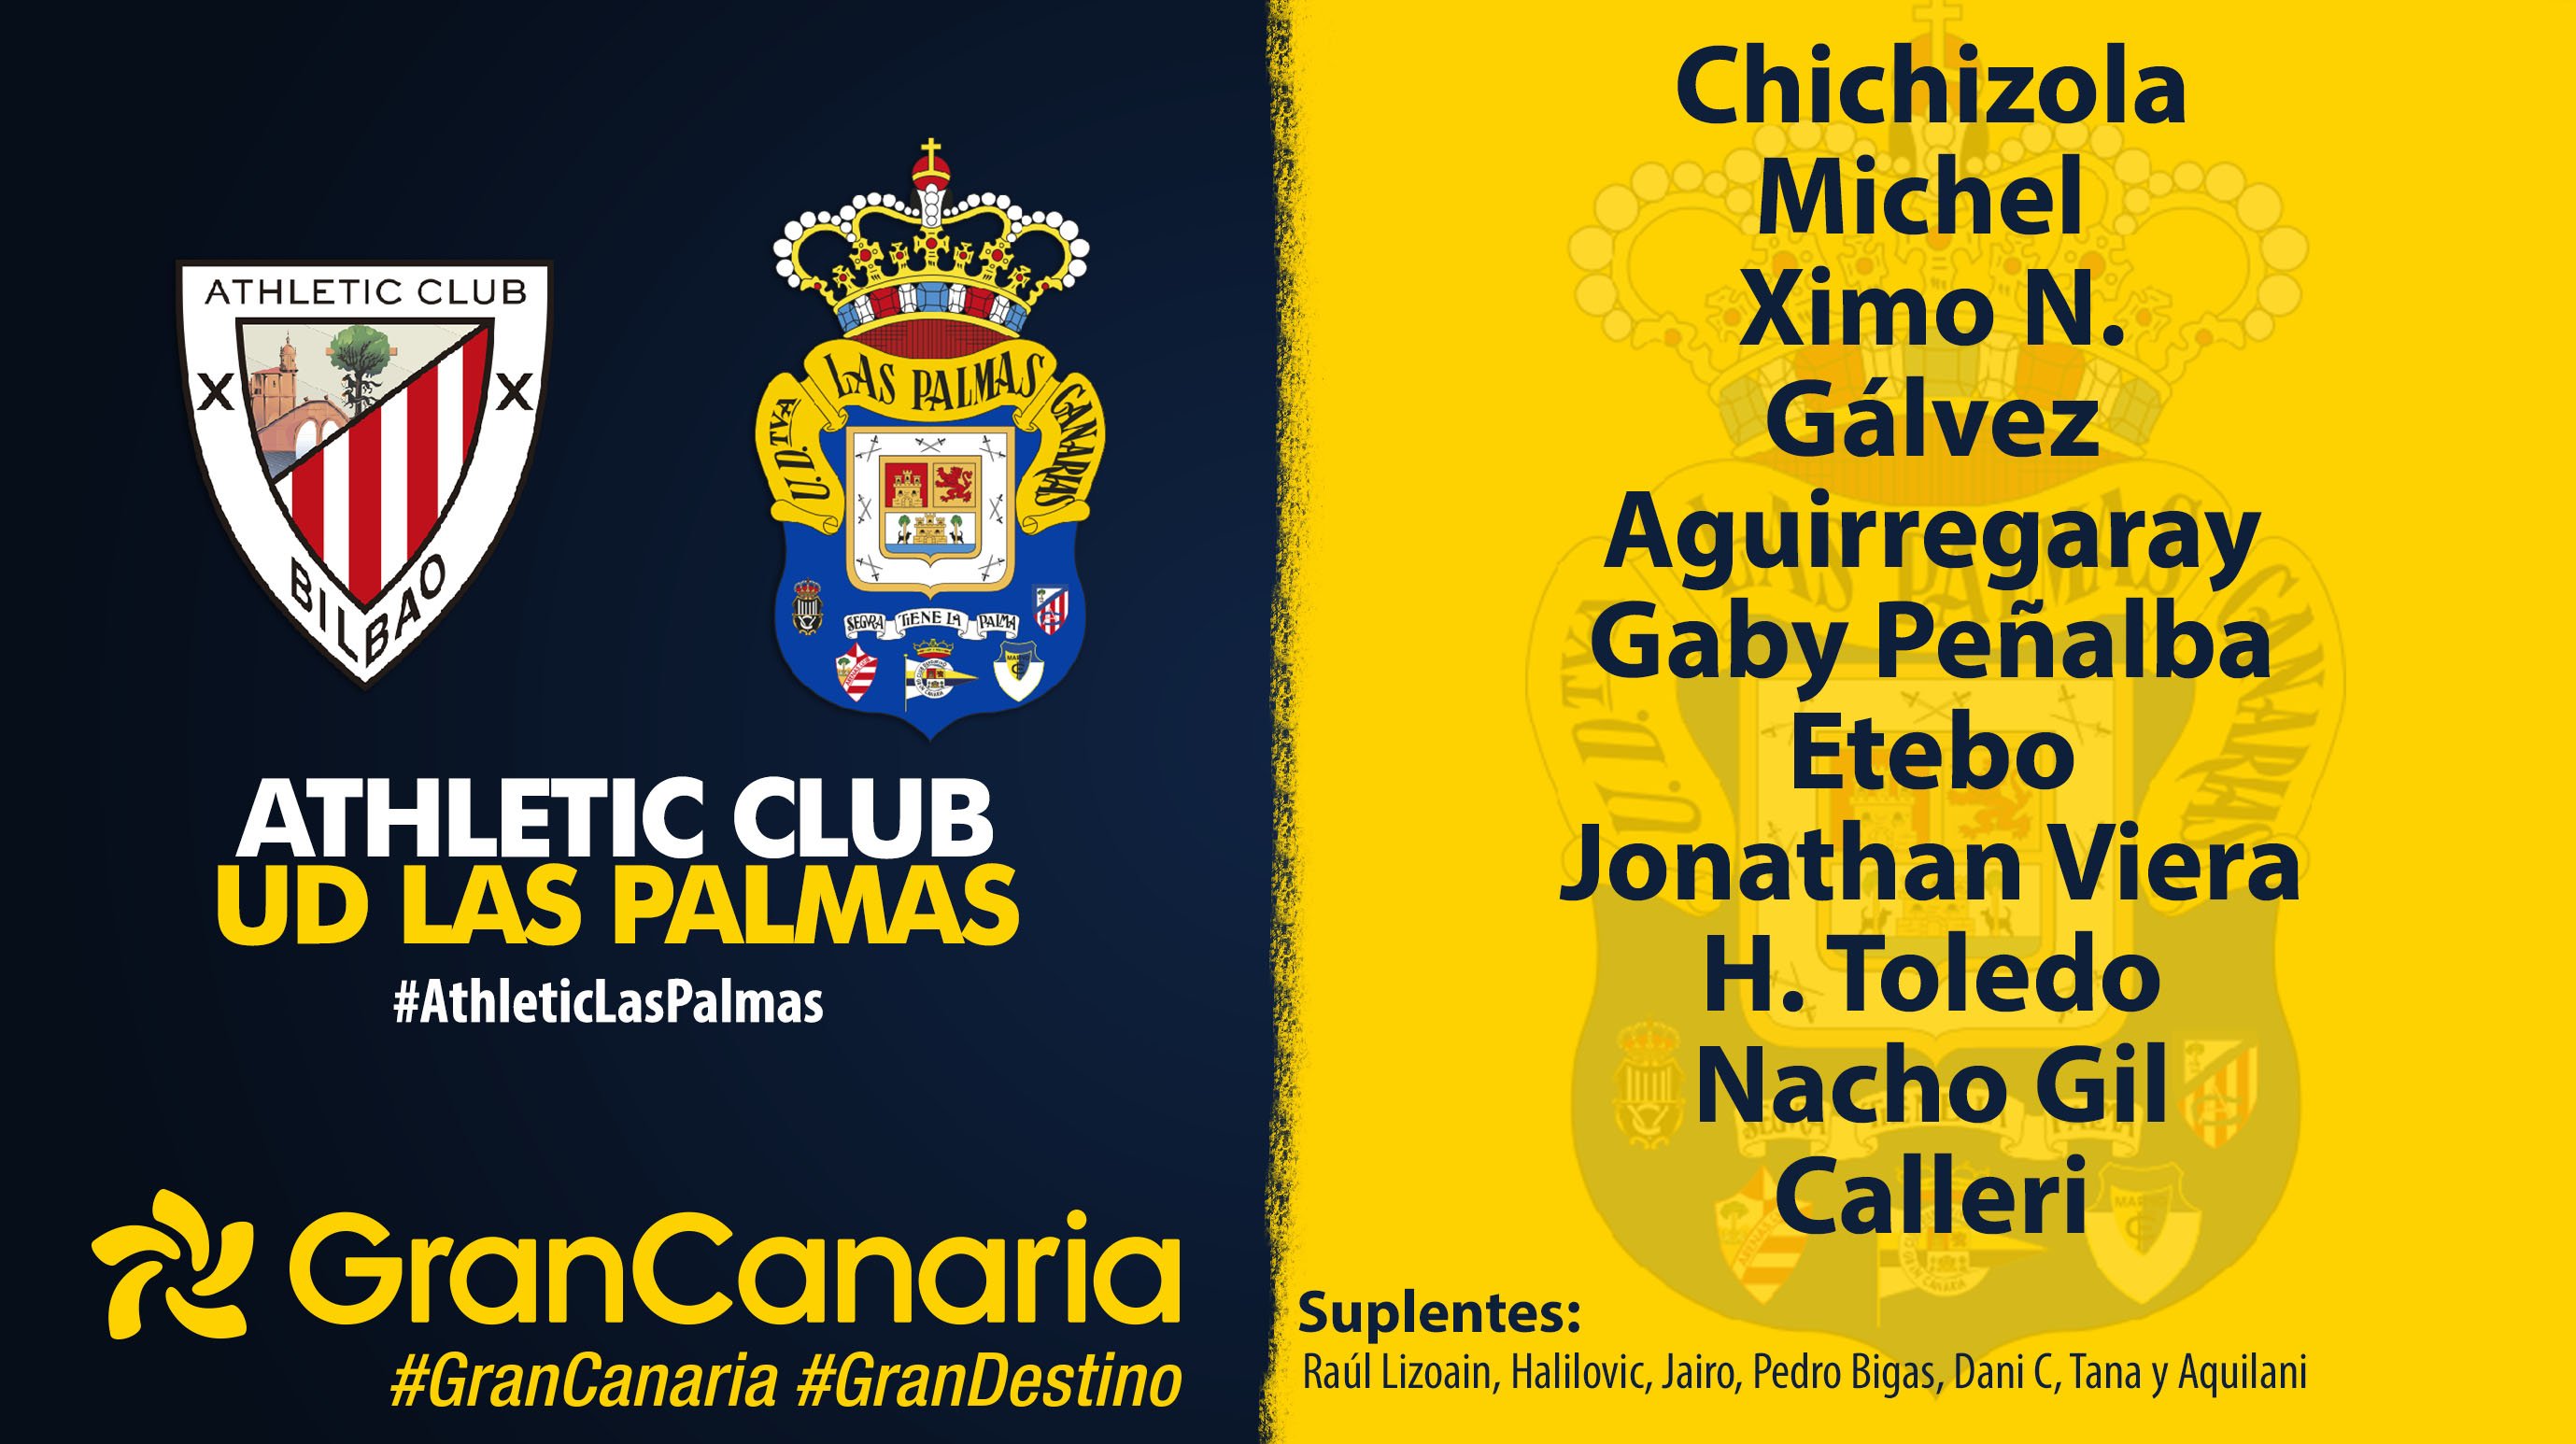 Consejo padre campeón UD Las Palmas on Twitter: "¡Nuestro once para el partido de hoy!  #AthleticLasPalmas ¡#VamosUD! https://t.co/ttKUIx42e6" / Twitter